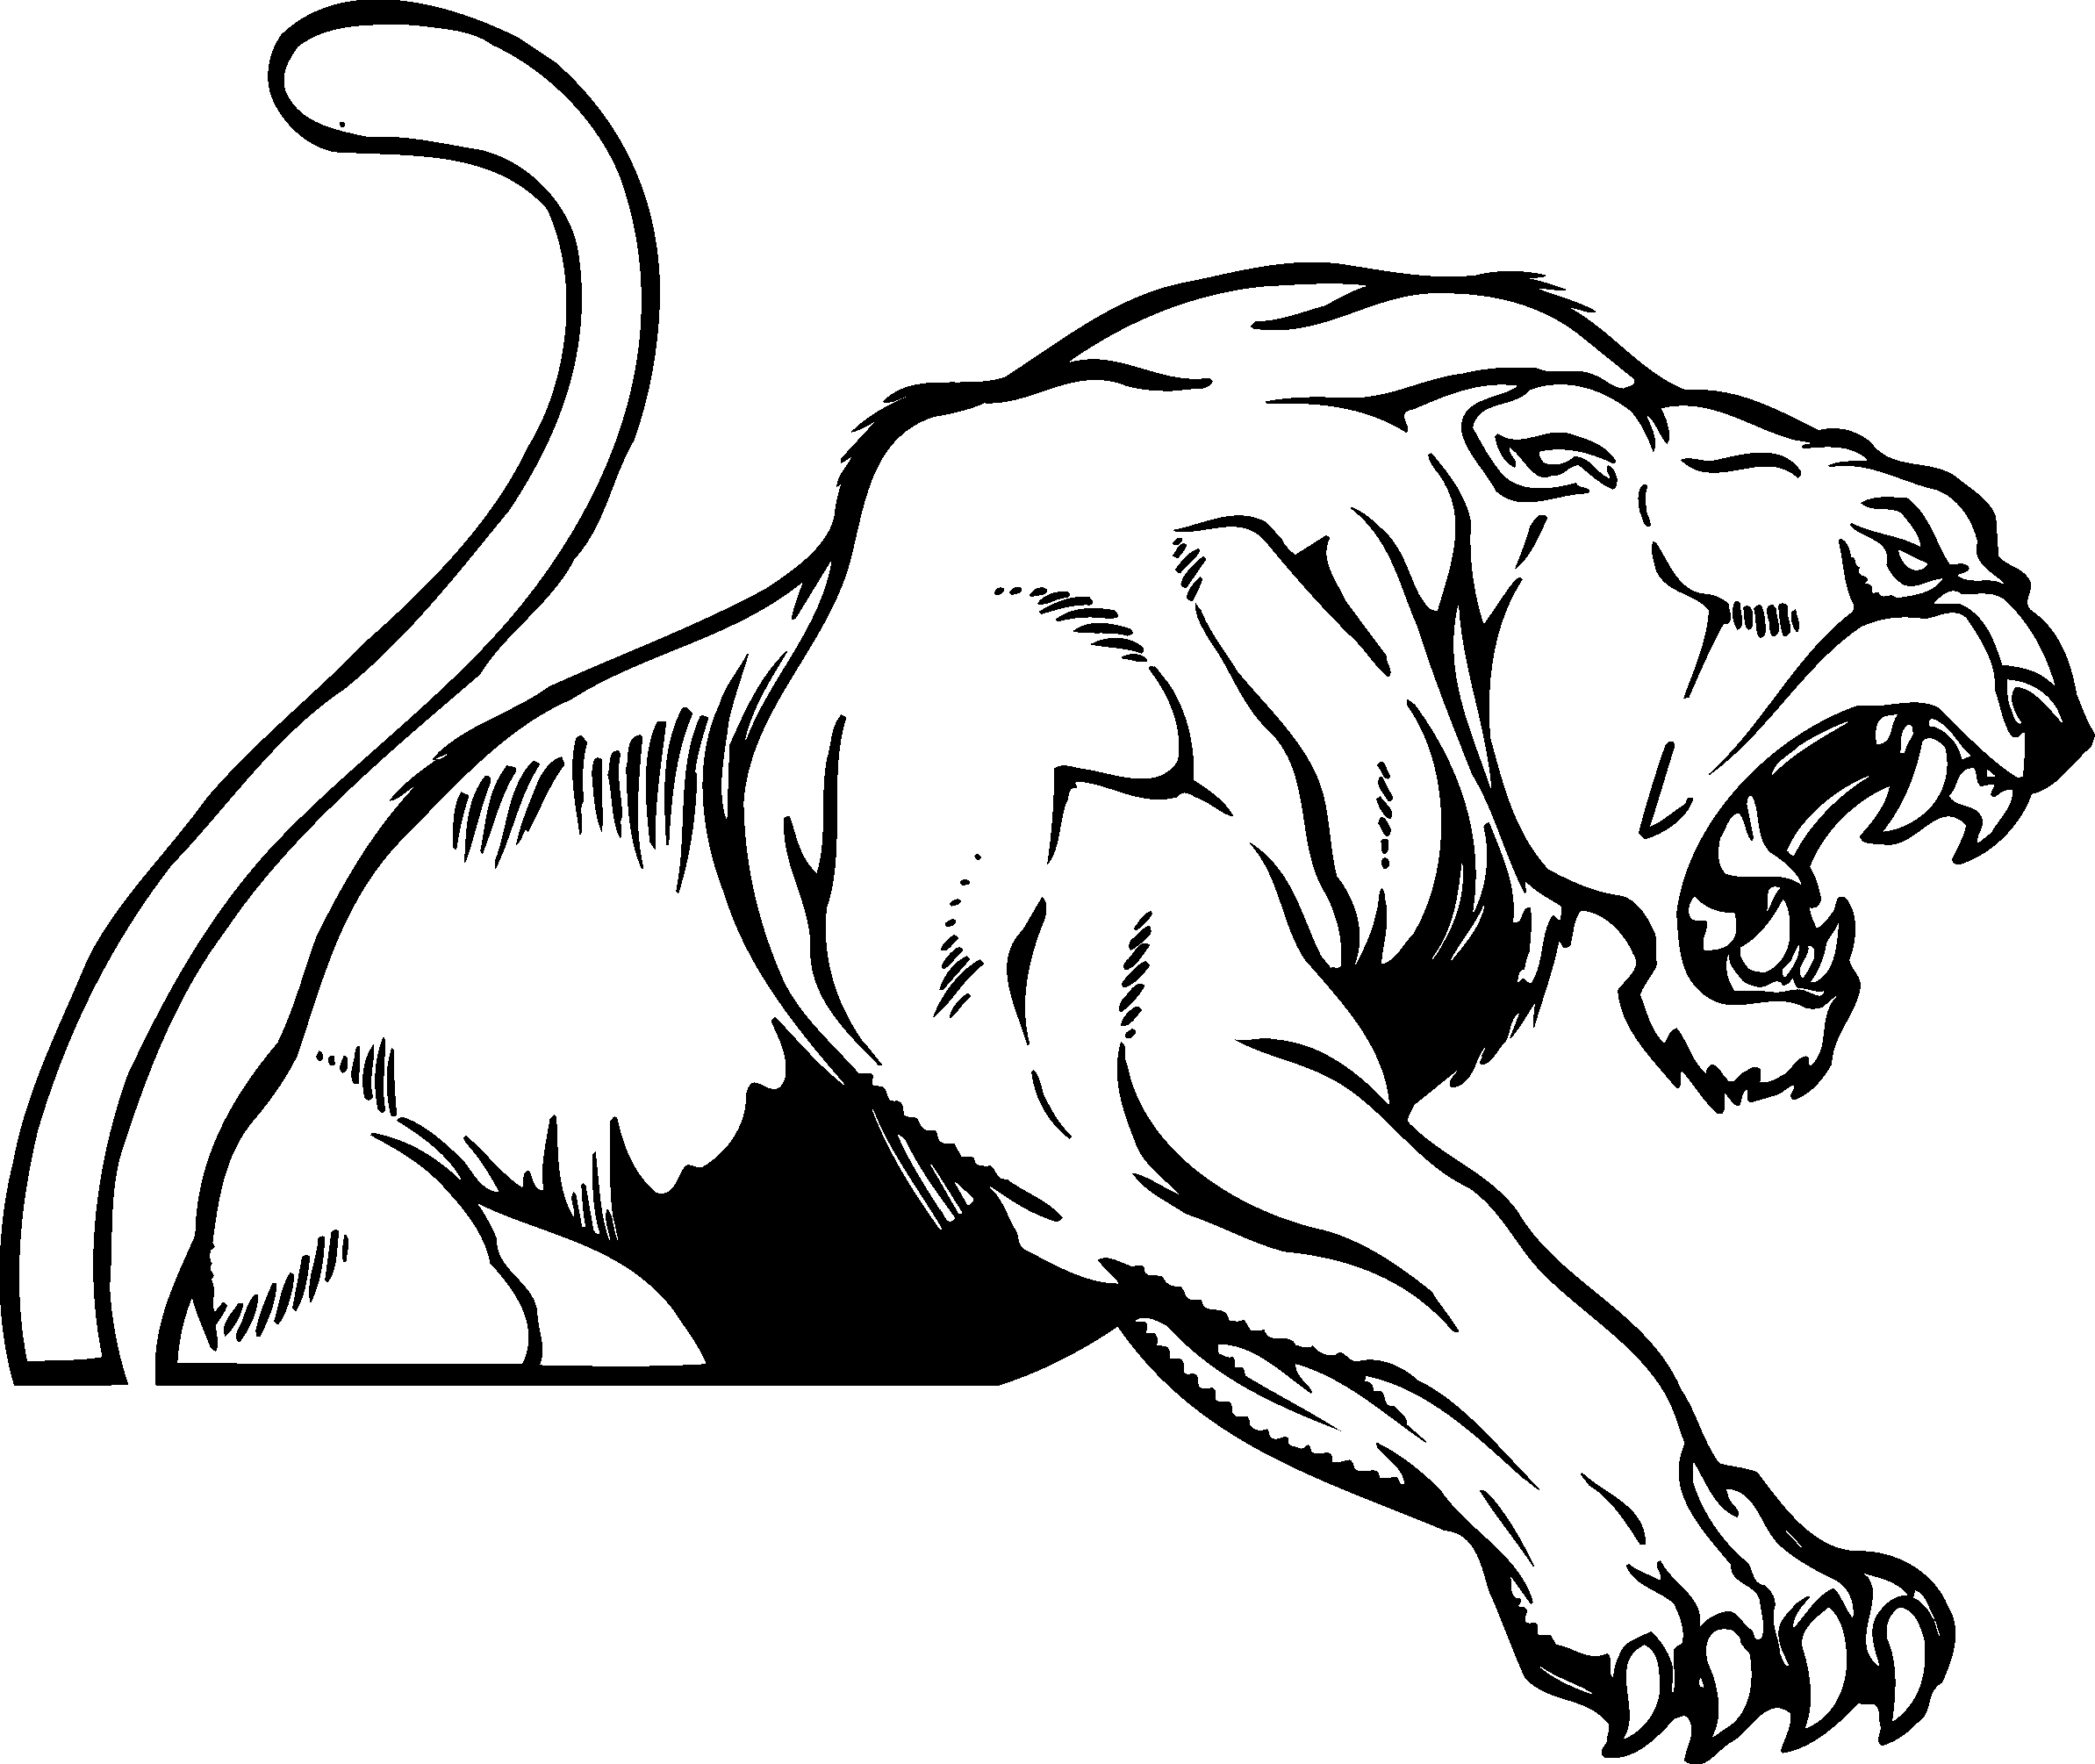 Black and White Panthers Logo - Free Black Panther Clipart, Download Free Clip Art, Free Clip Art on ...